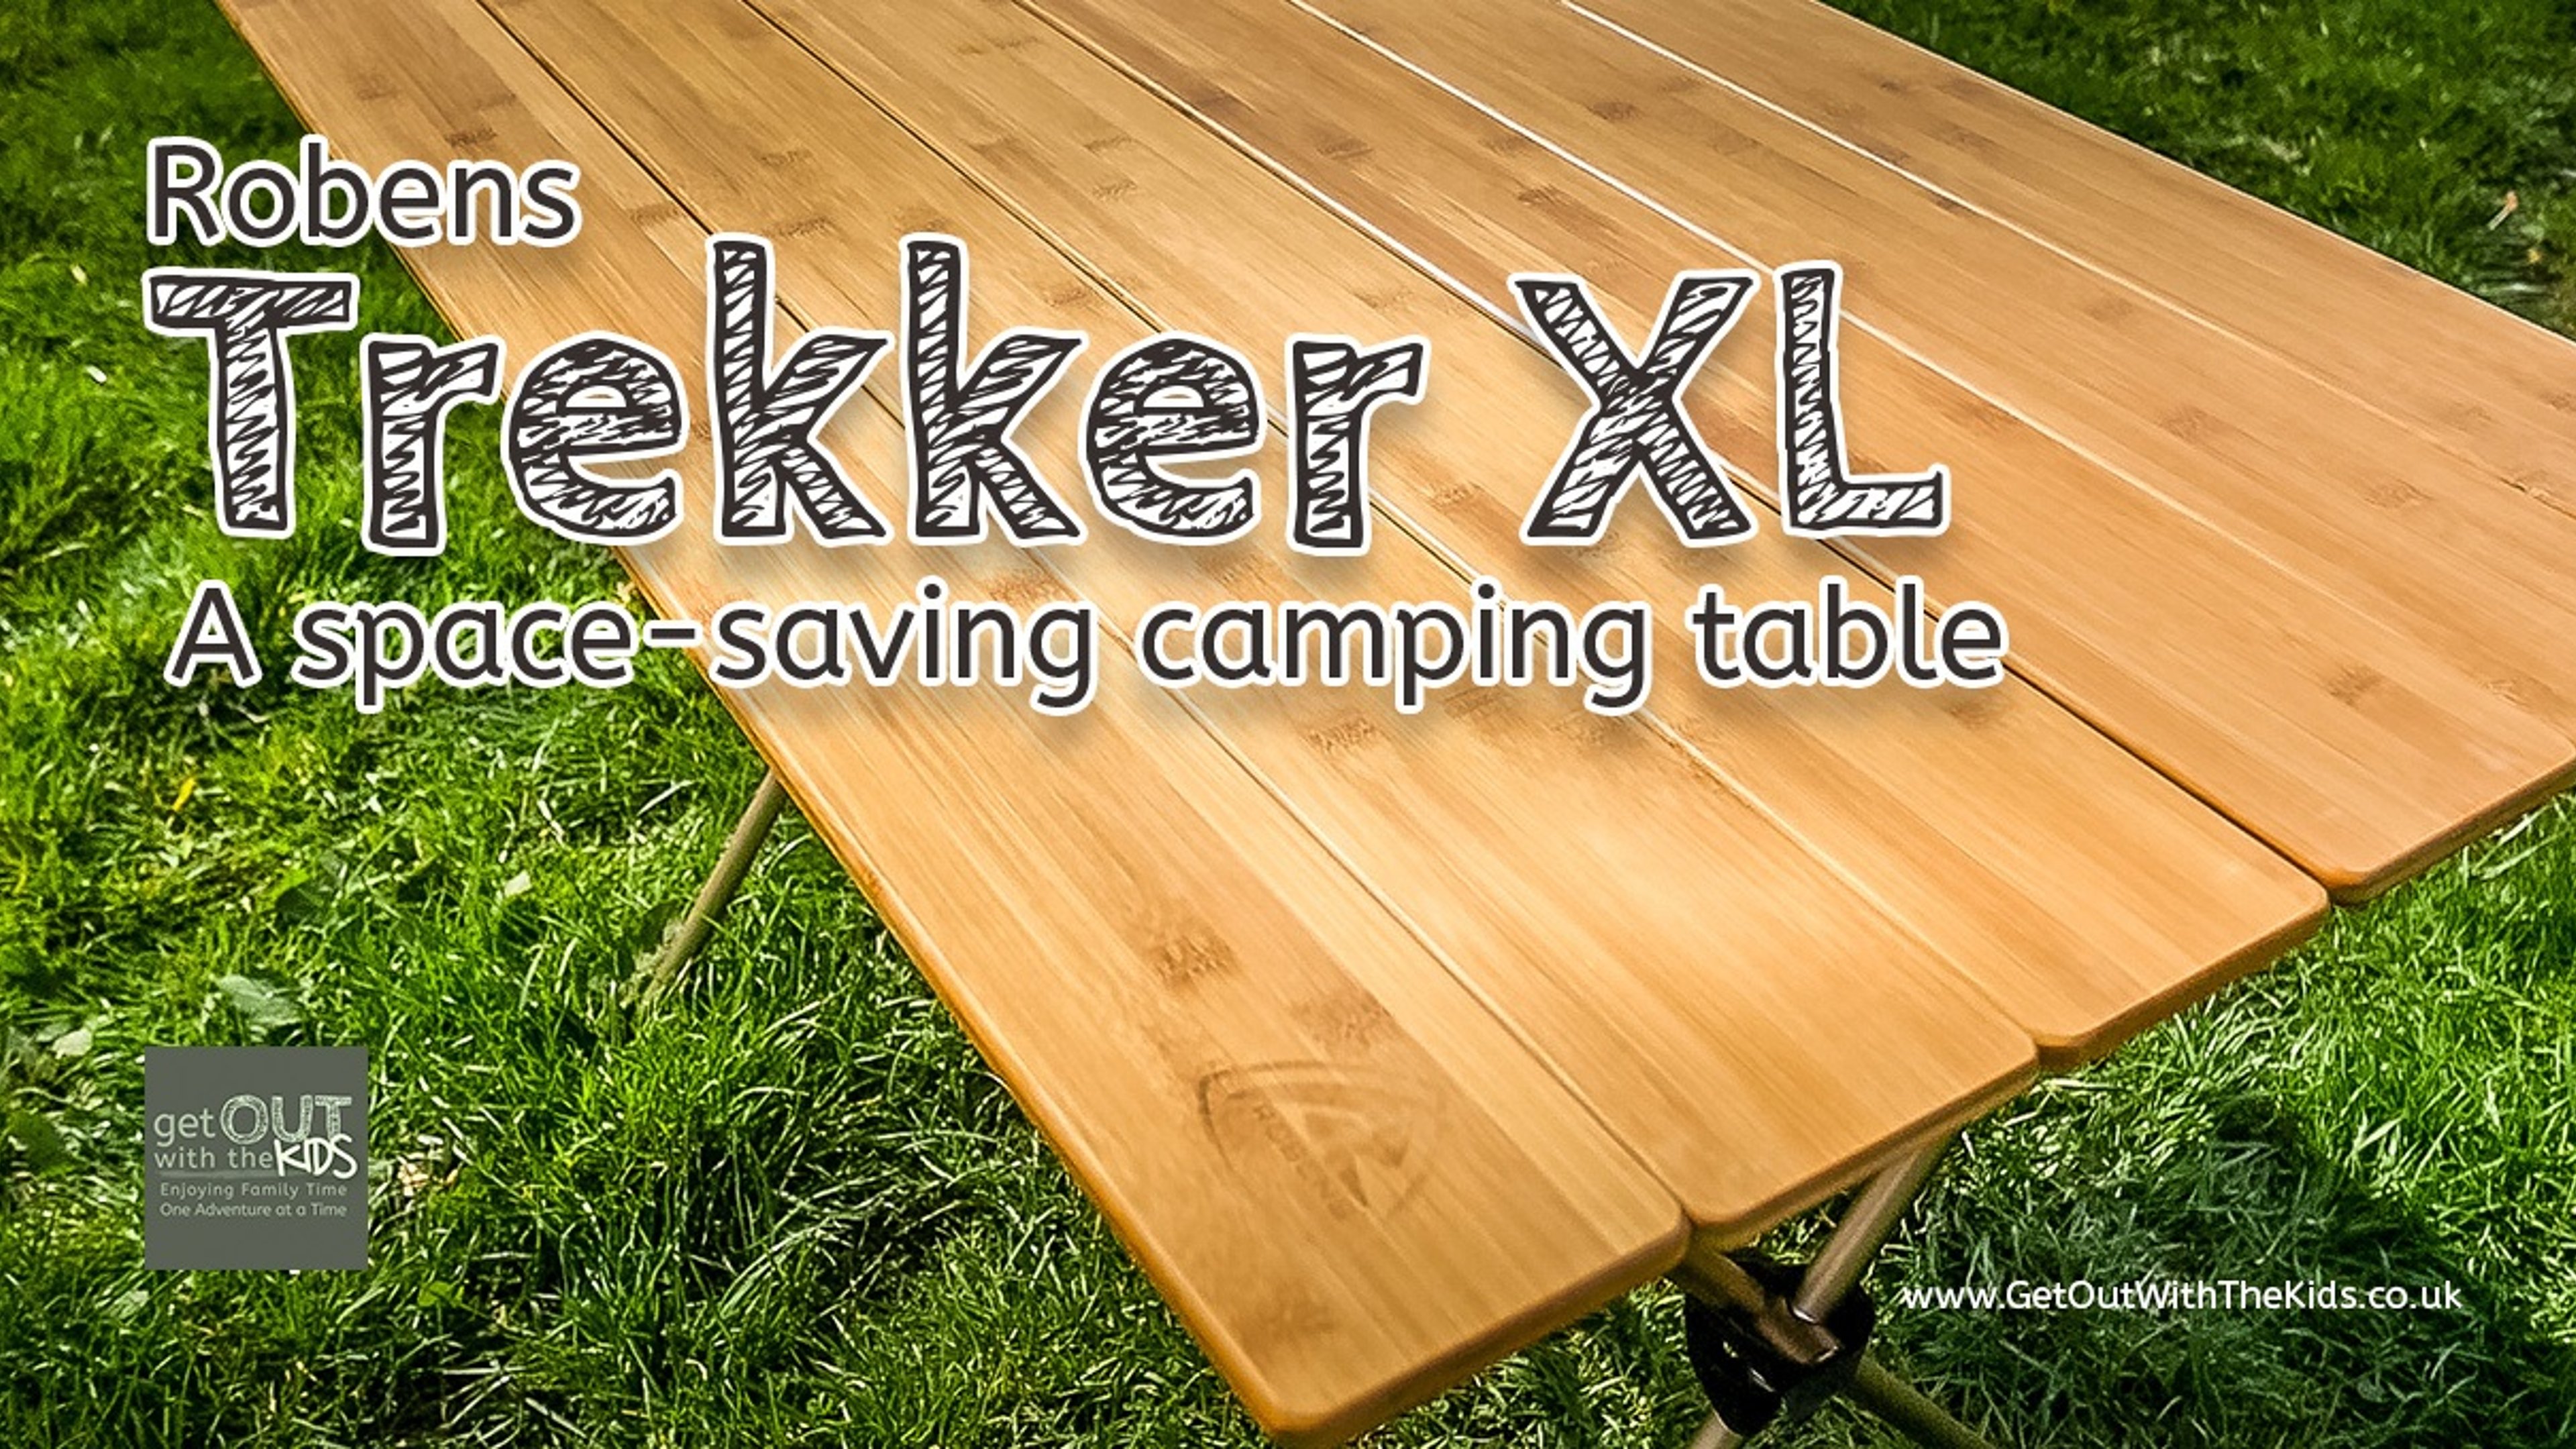 The Robens Trekker XL table